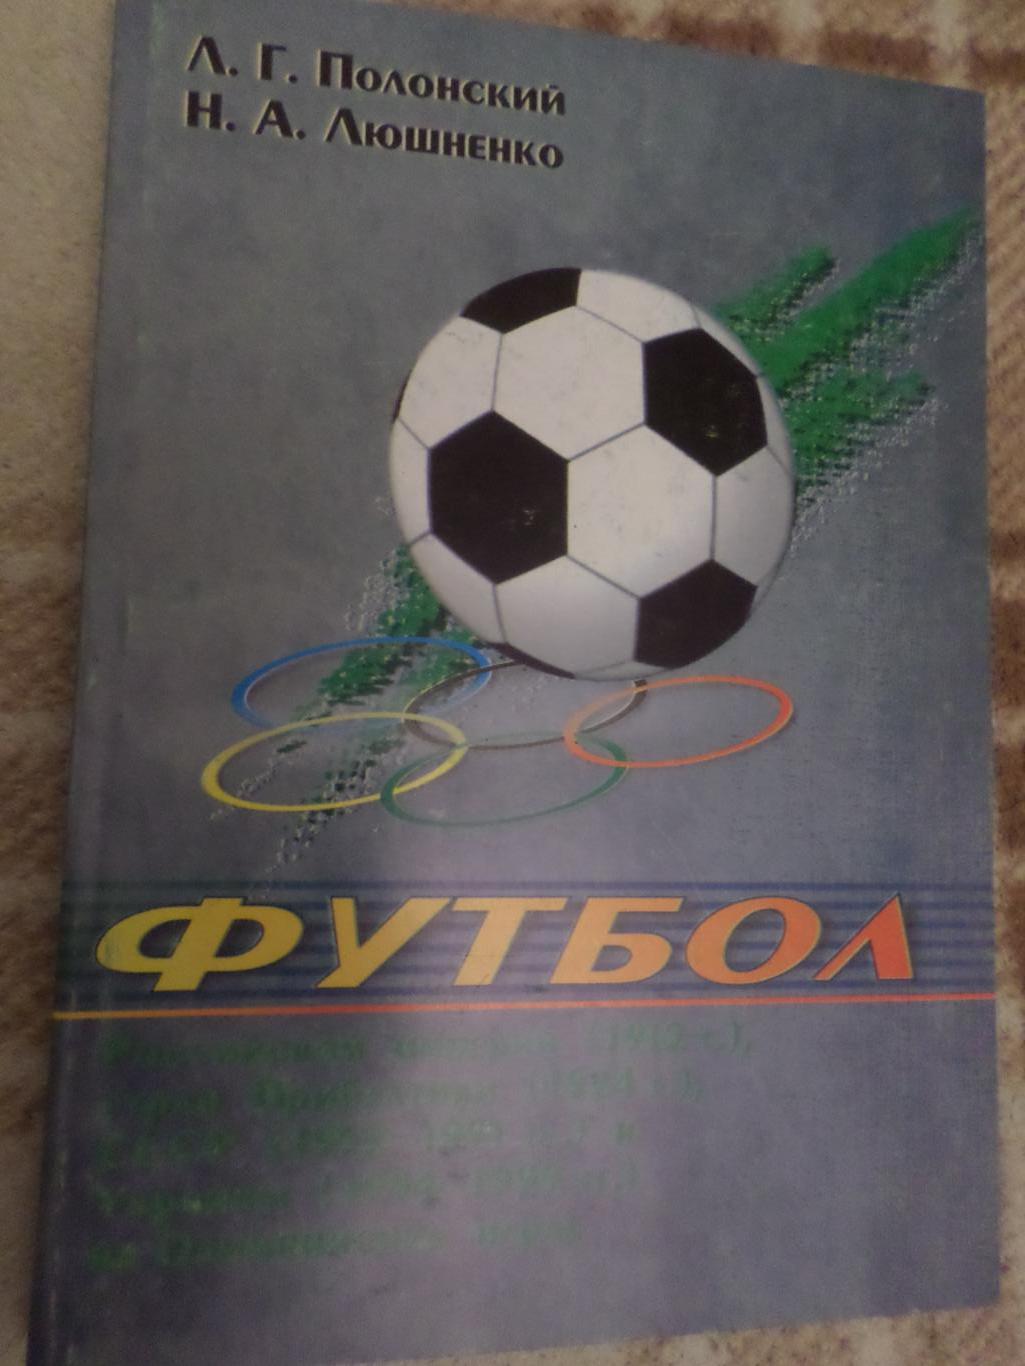 Полонский - Футбол Российской империи, Прибалтики, СССР и Украины на олимпиадах